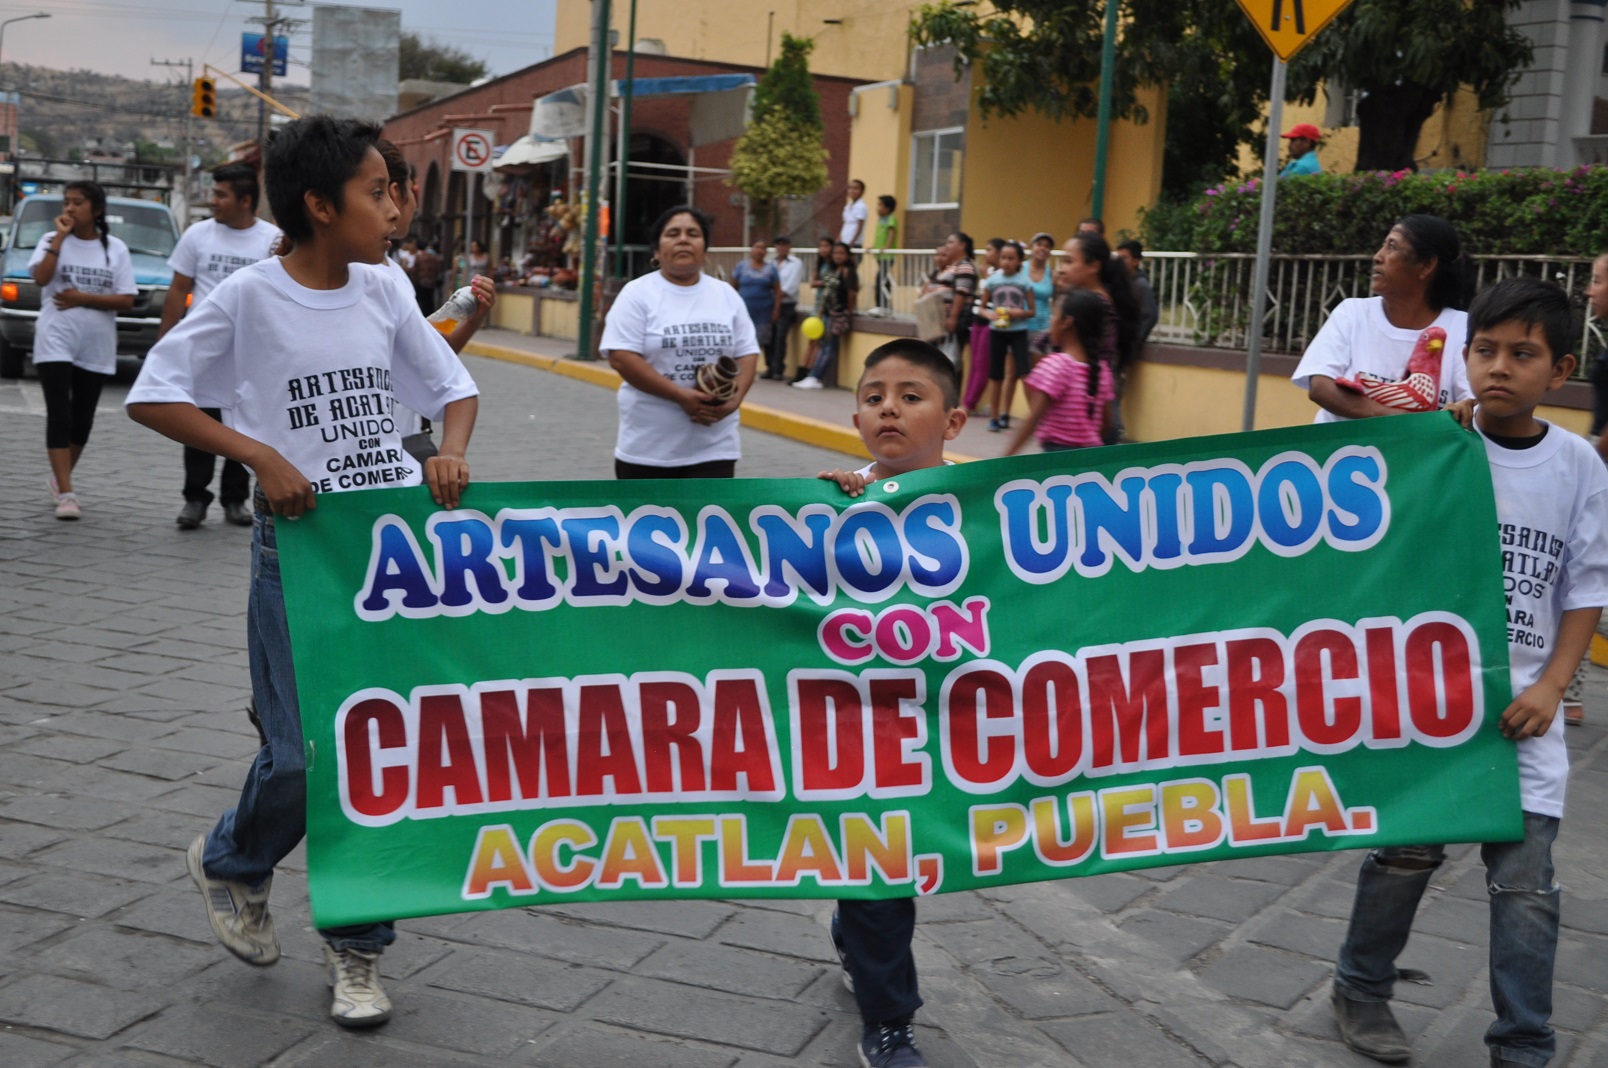 Danzantes de Oaxaca encabezan desfile de carnaval en Acatlán